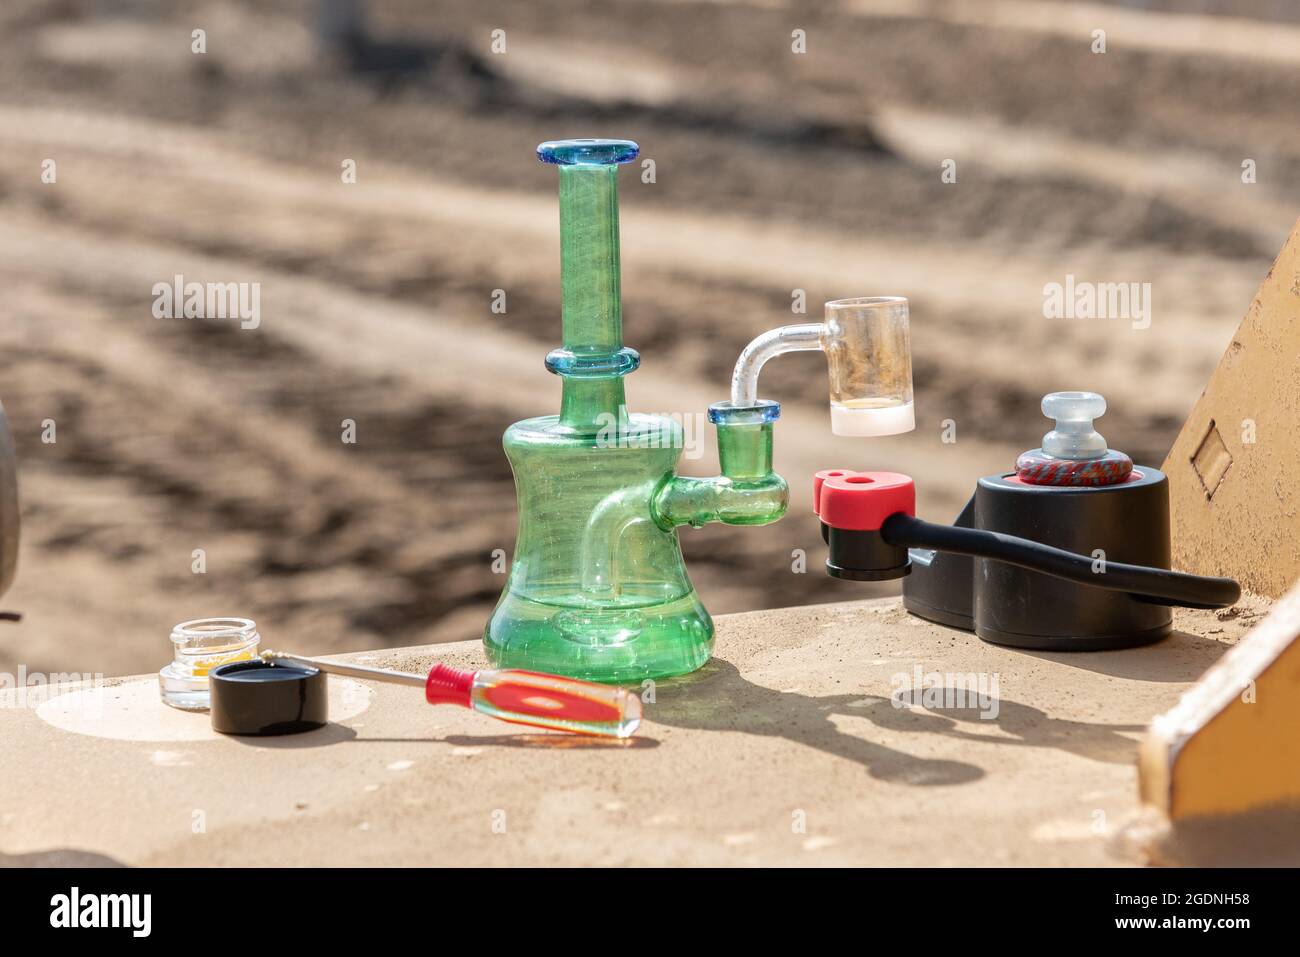 Sistema de refrigeración de vidrio para ayudar a inhalar el vapor de resina viva a medida que aumentan las ventas de cannabis legal en California. Foto de stock